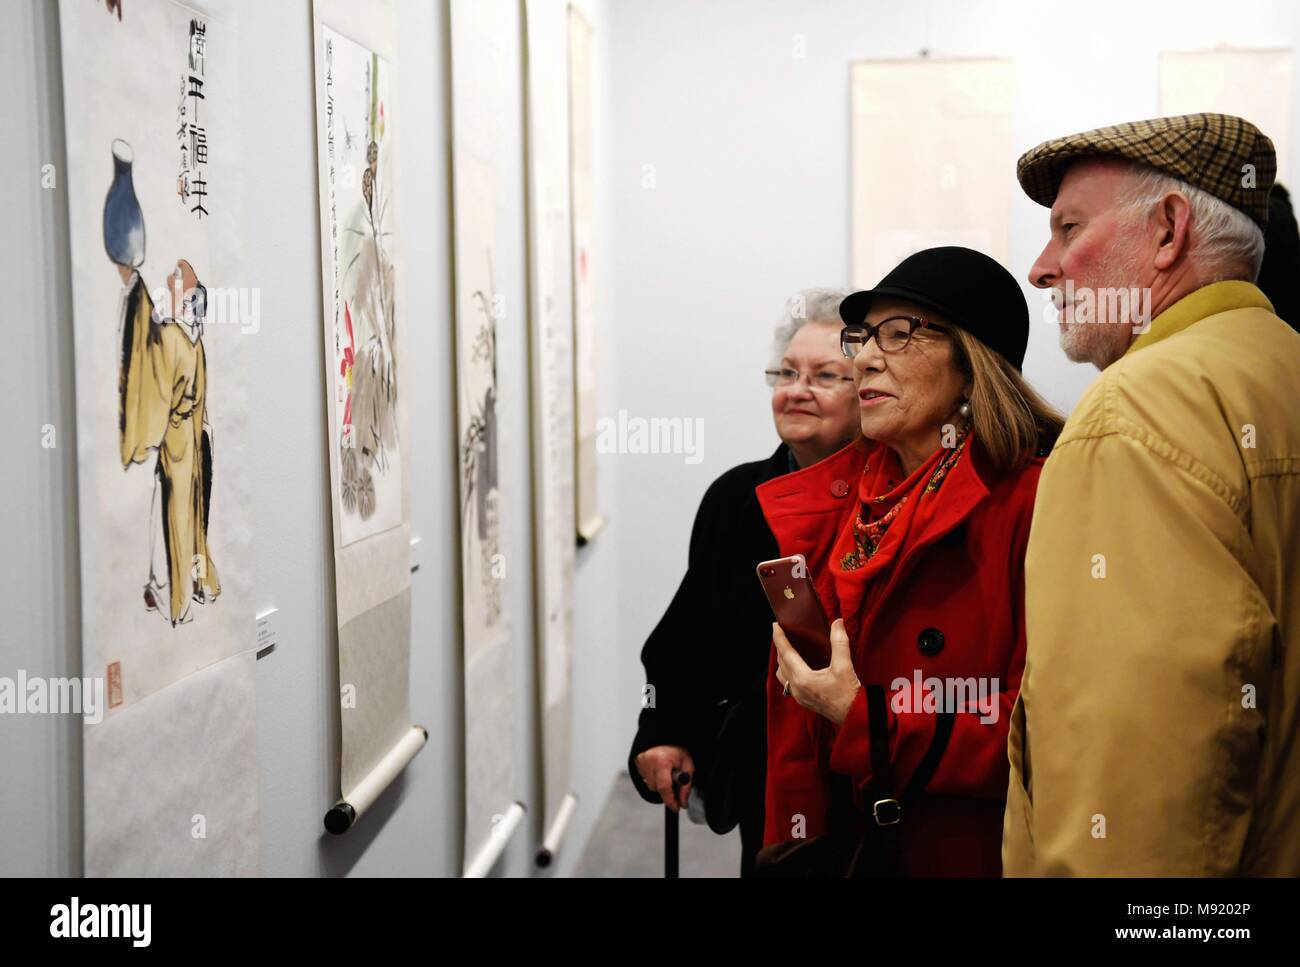 Malaga, Espagne. Mar 20, 2018. Les visiteurs les oeuvres de l'artiste chinois Qi Baishi lors d'une exposition à Málaga, Espagne, le 20 mars 2018. Credit : Guo Qiuda/Xinhua/Alamy Live News Banque D'Images